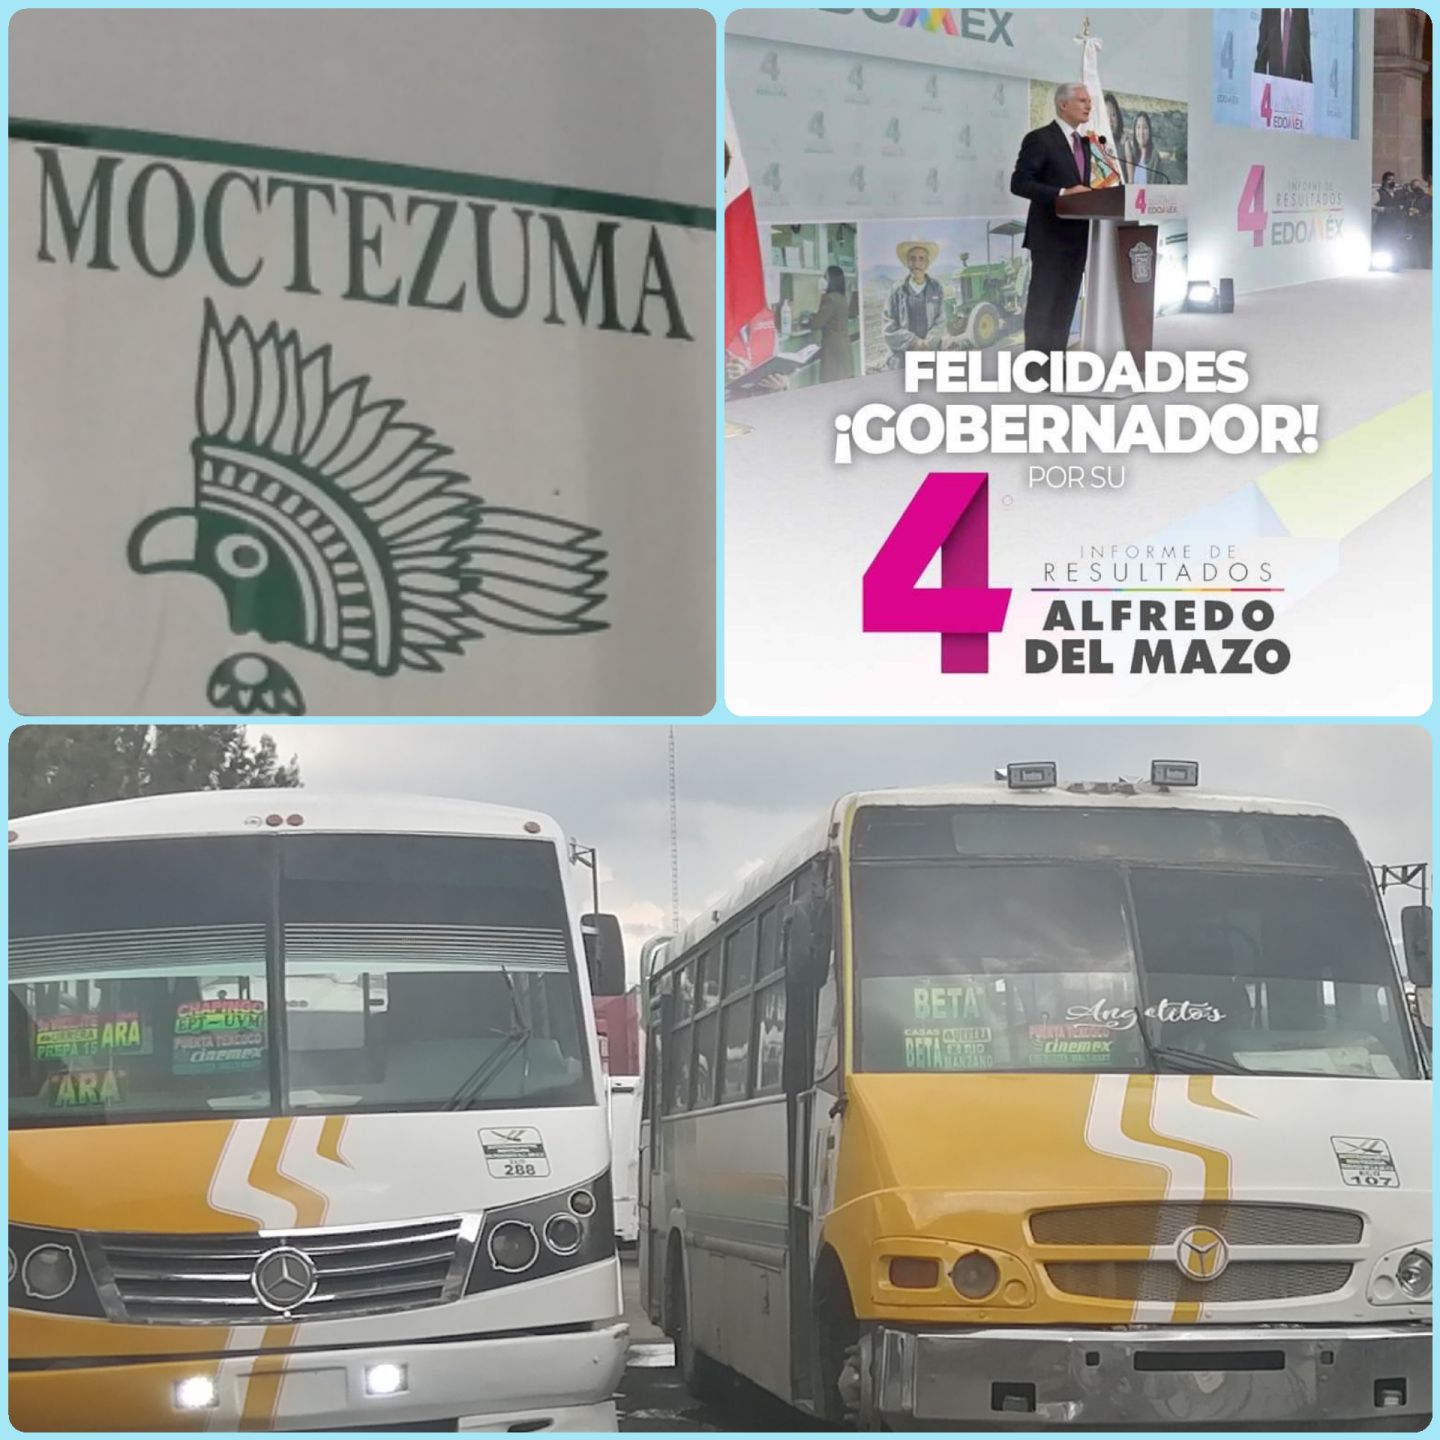 Transporte Moctezuma Texcoco Felicita  al gobernador Alfredo del Mazo Maza por su 4° Informe de gobierno 